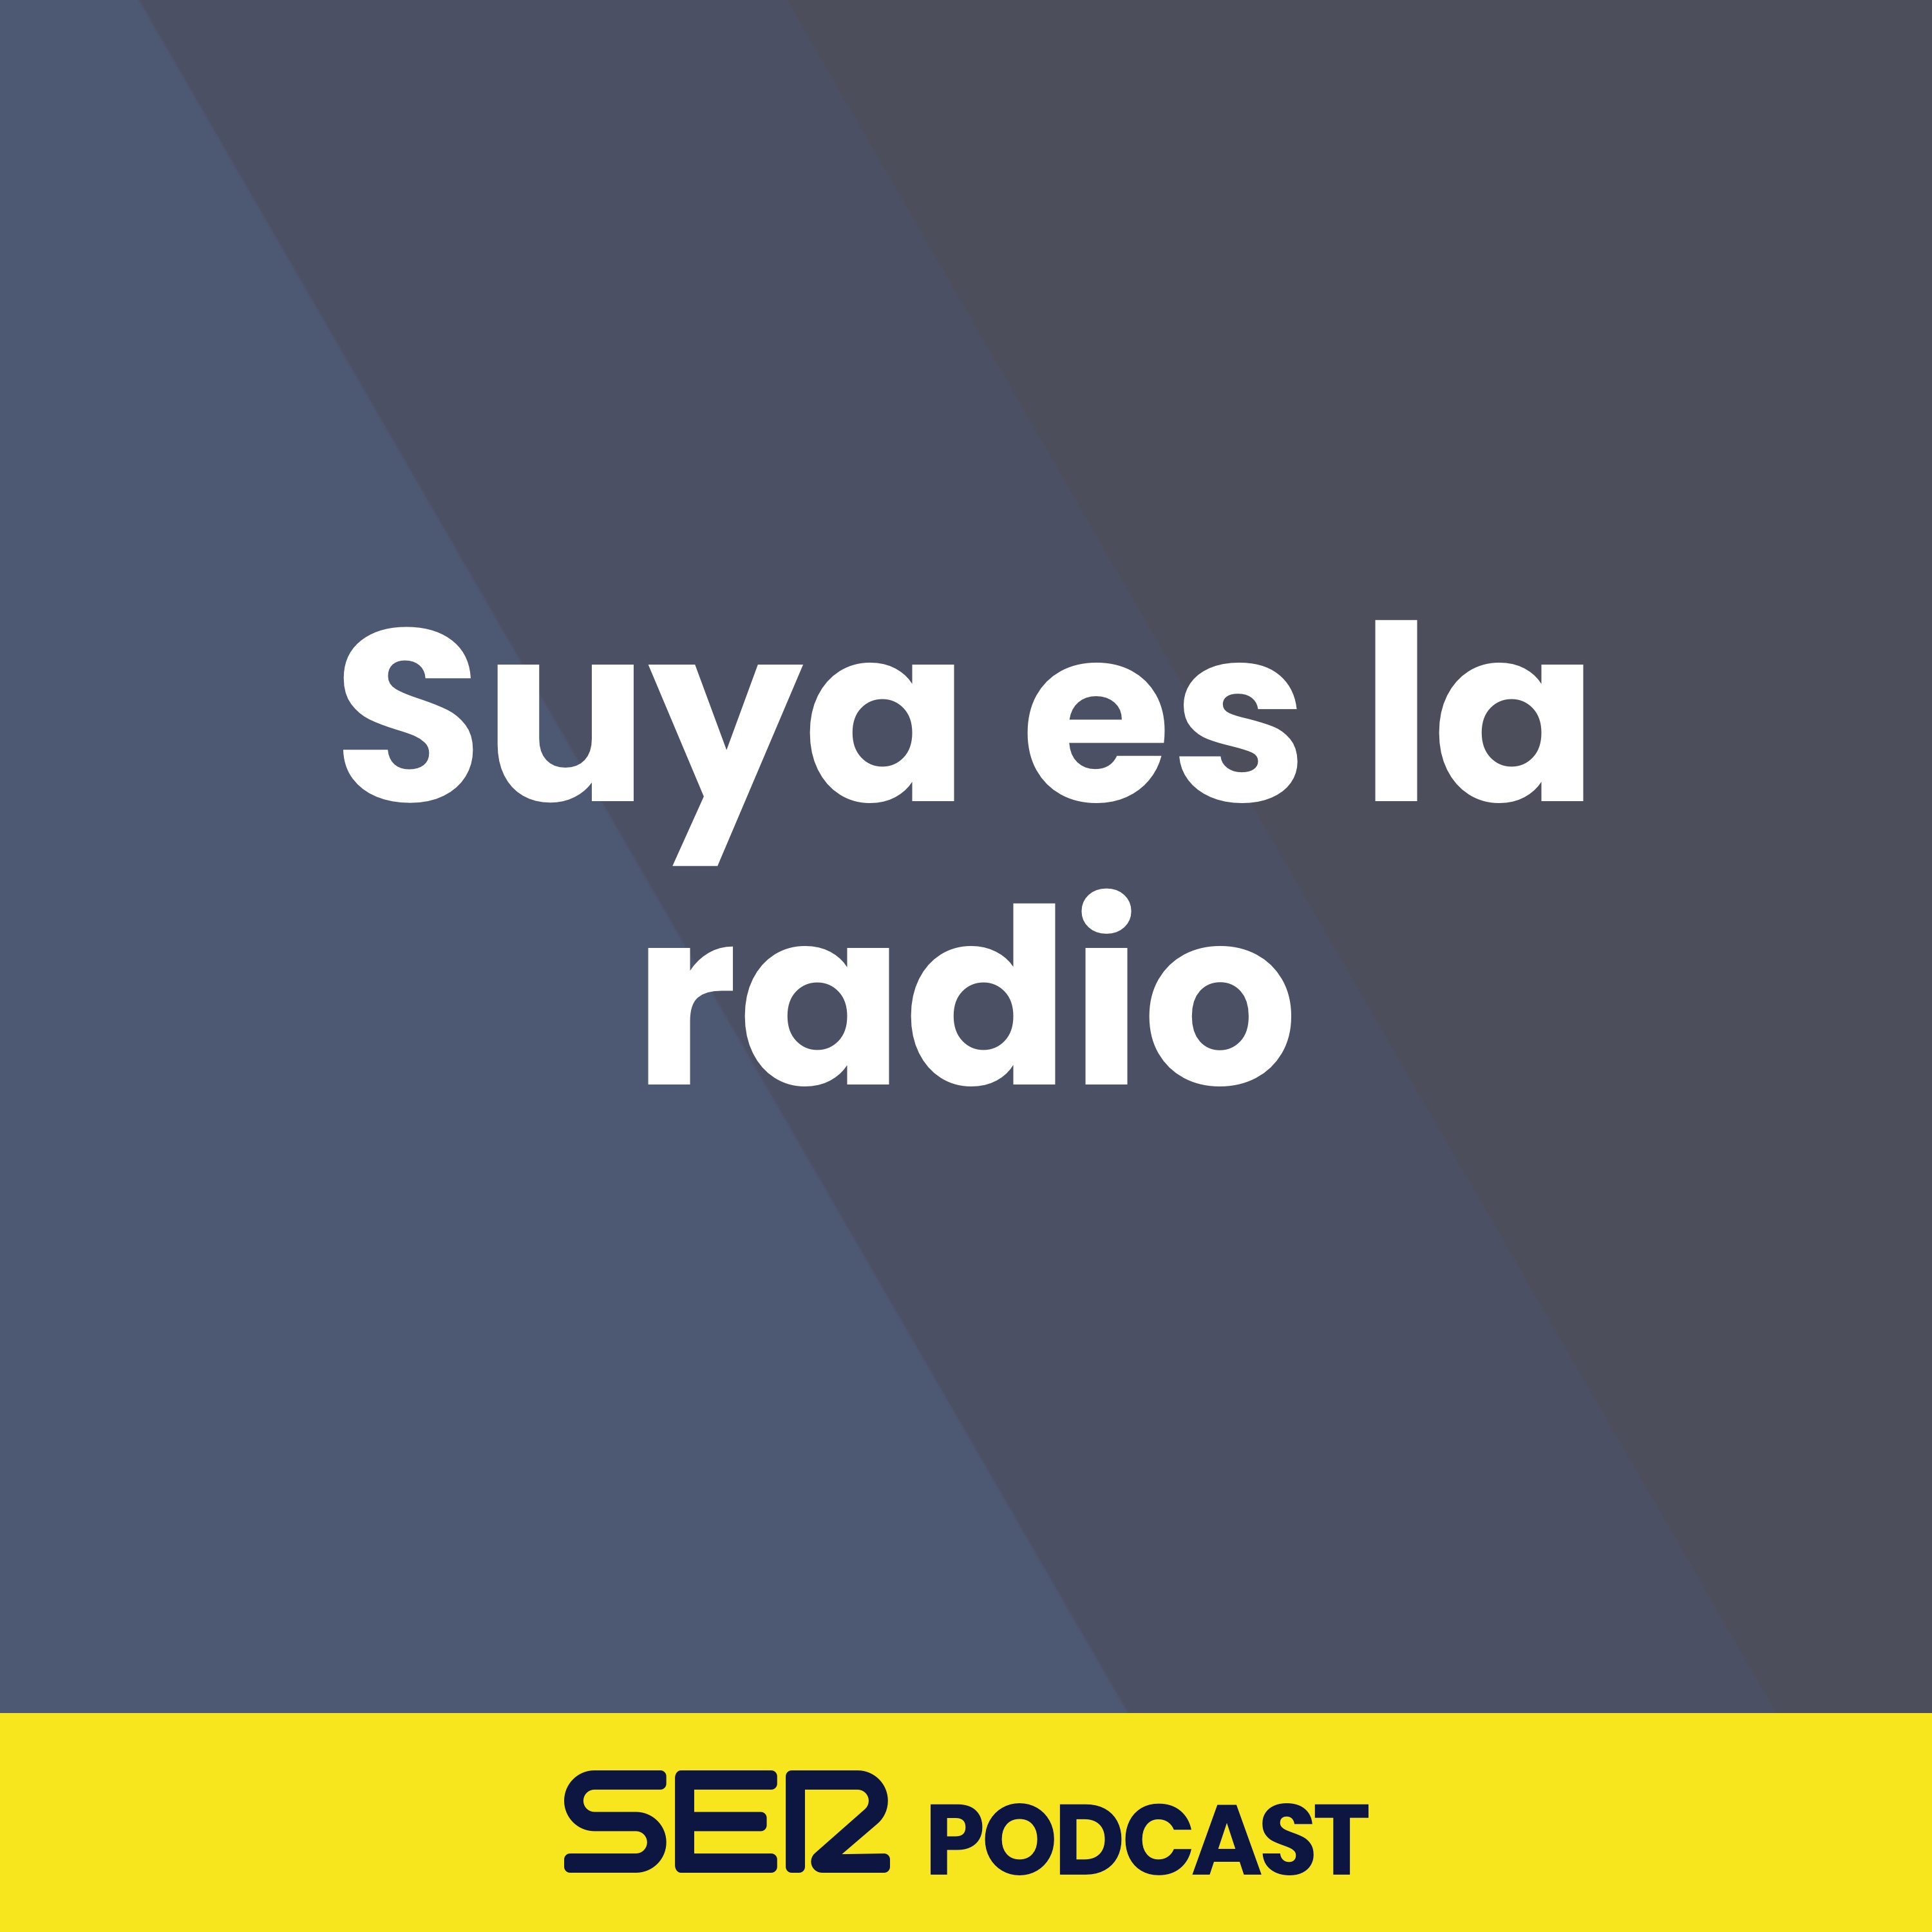 Suya es la radio